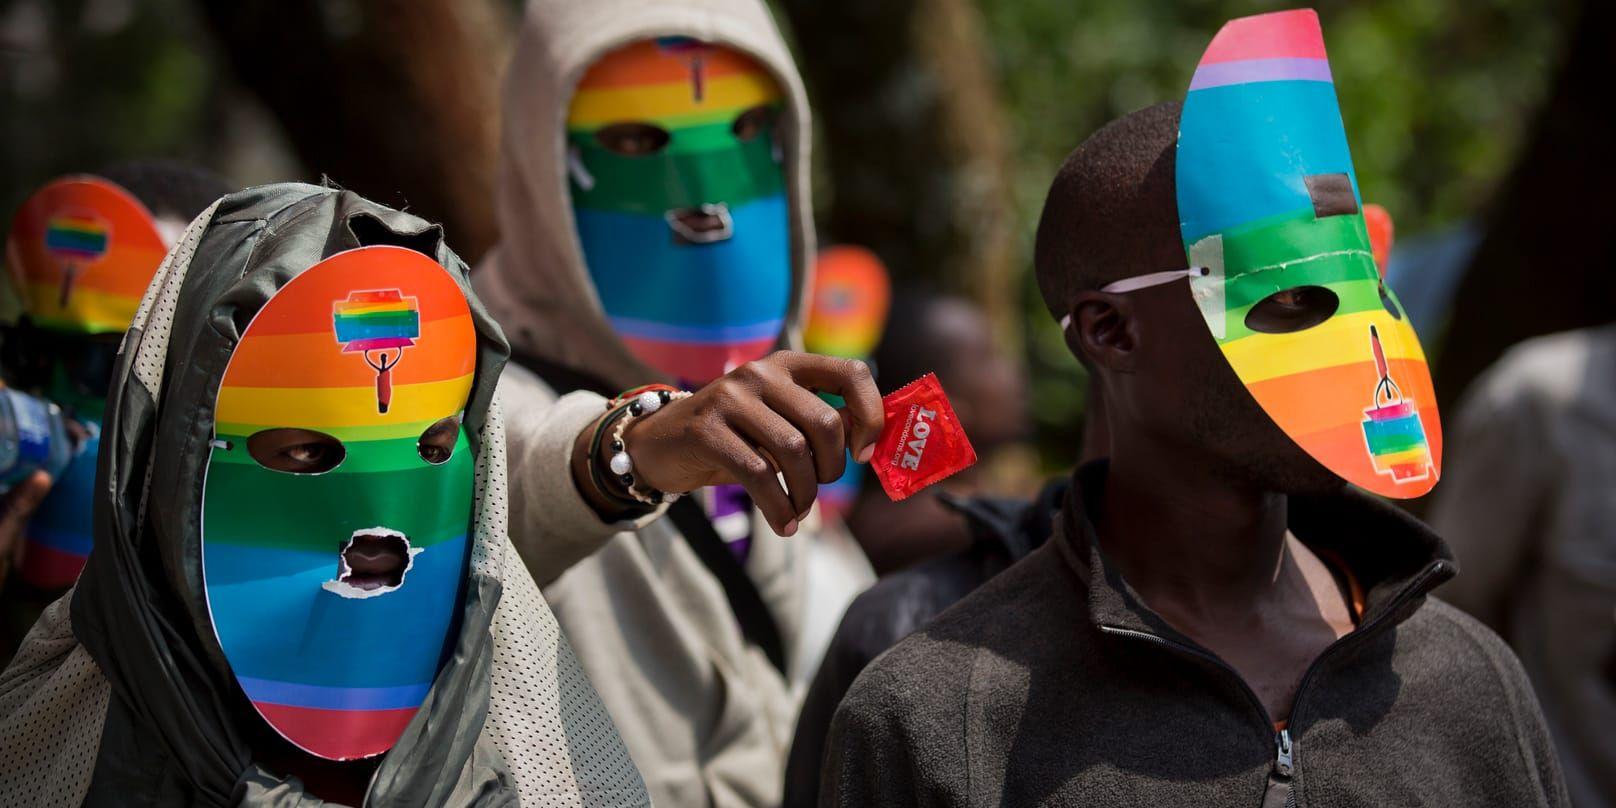 Hbt-aktivister i Kenya demonstrerat under skyddet av masker eftersom homosexualitet kan ge 14 års fängelse.